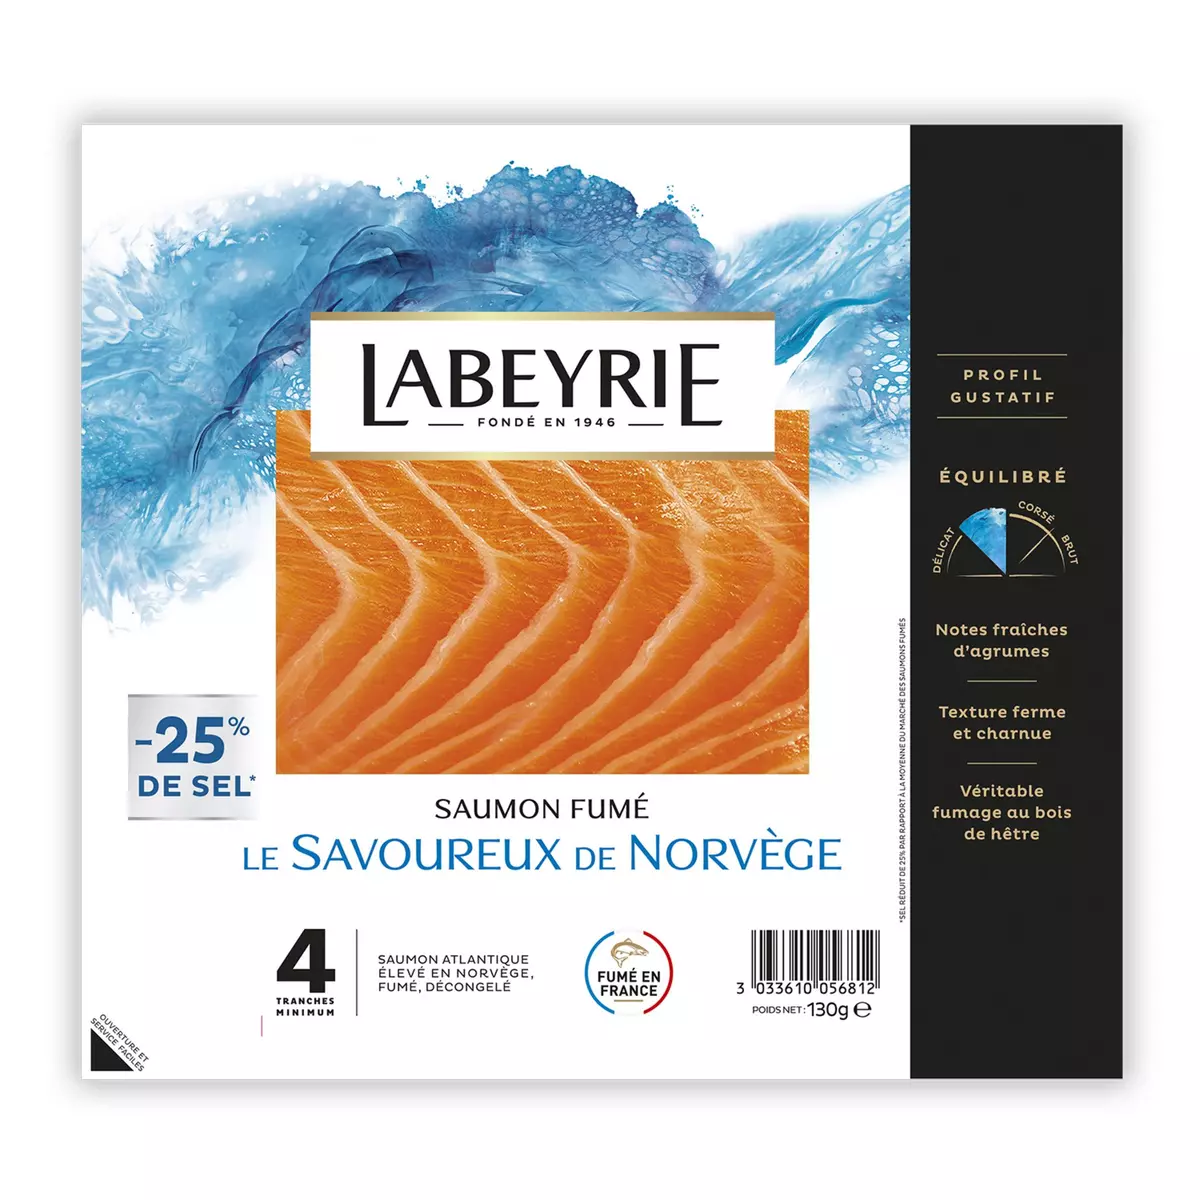 LABEYRIE Saumon fumé de Norvège -25% de sel 4 tranches 130g